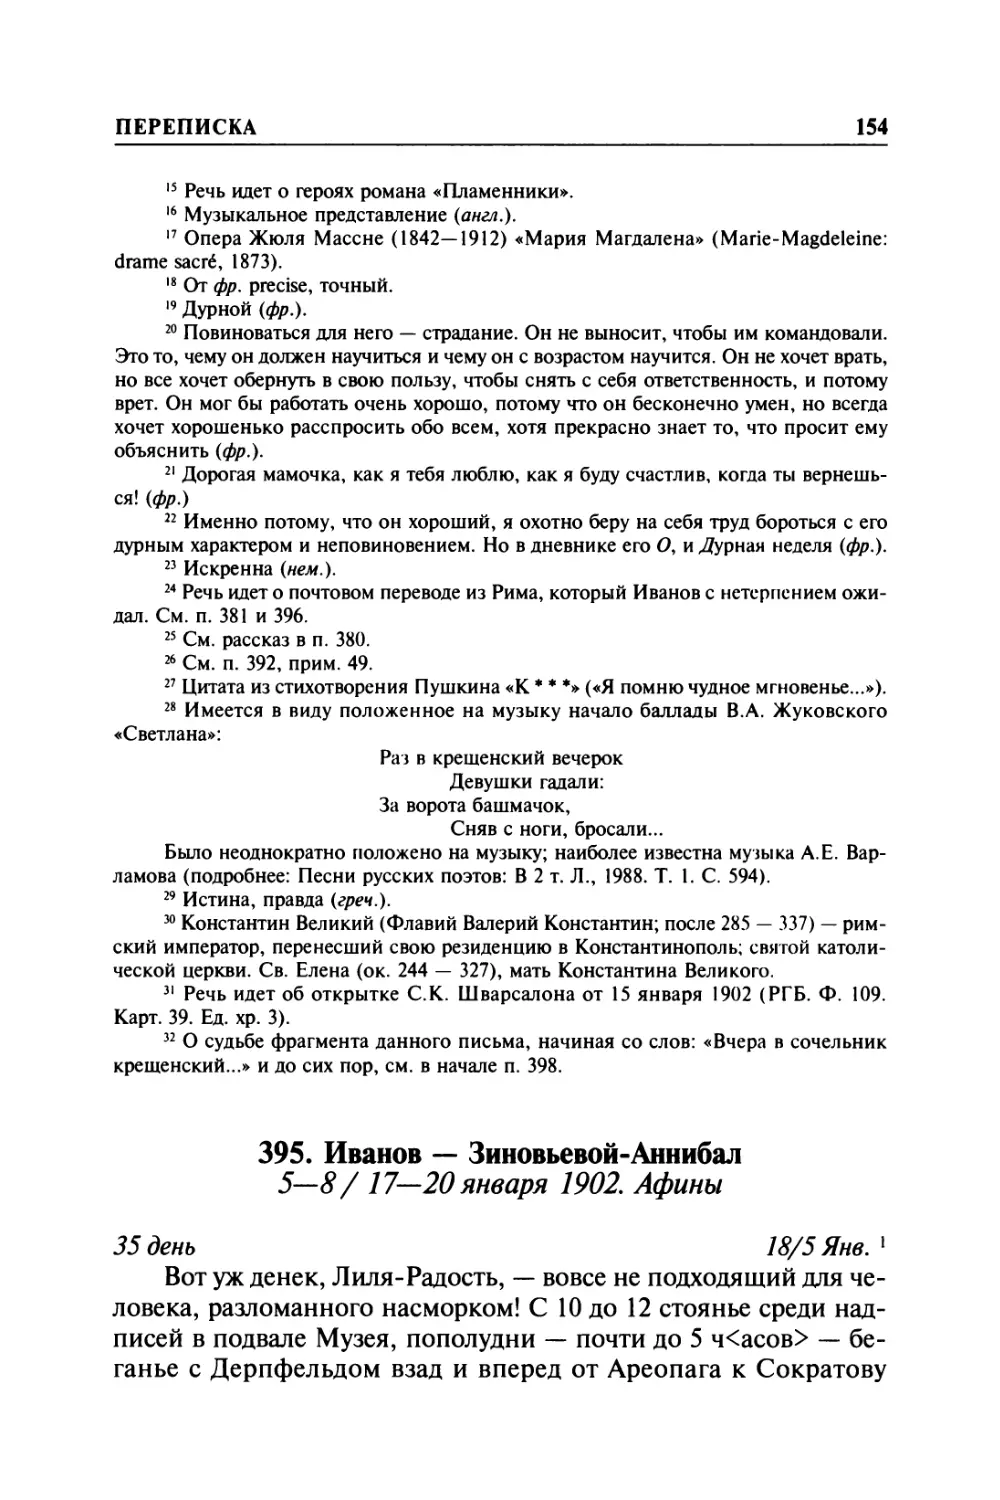 395. Иванов — Зиновьевой-Аннибал. 5—8/ 17—20 января 1902. Афины